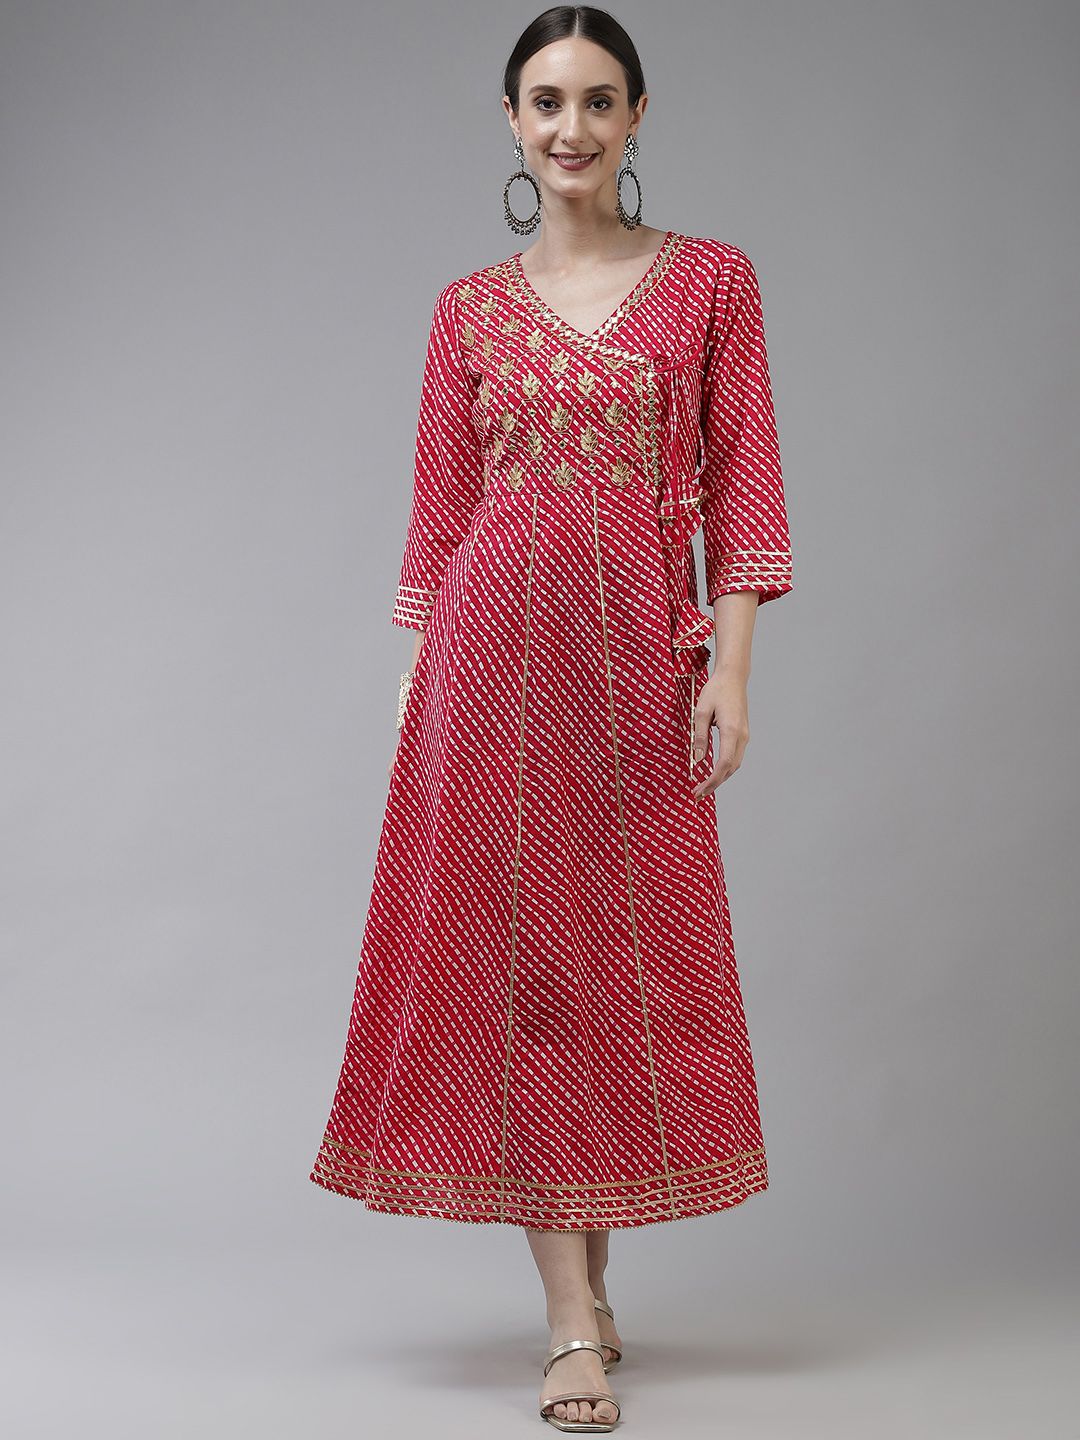 Yufta Pink Ethnic Motifs Embroidered Gotta Patti Pure Cotton Ethnic Maxi Dress Price in India